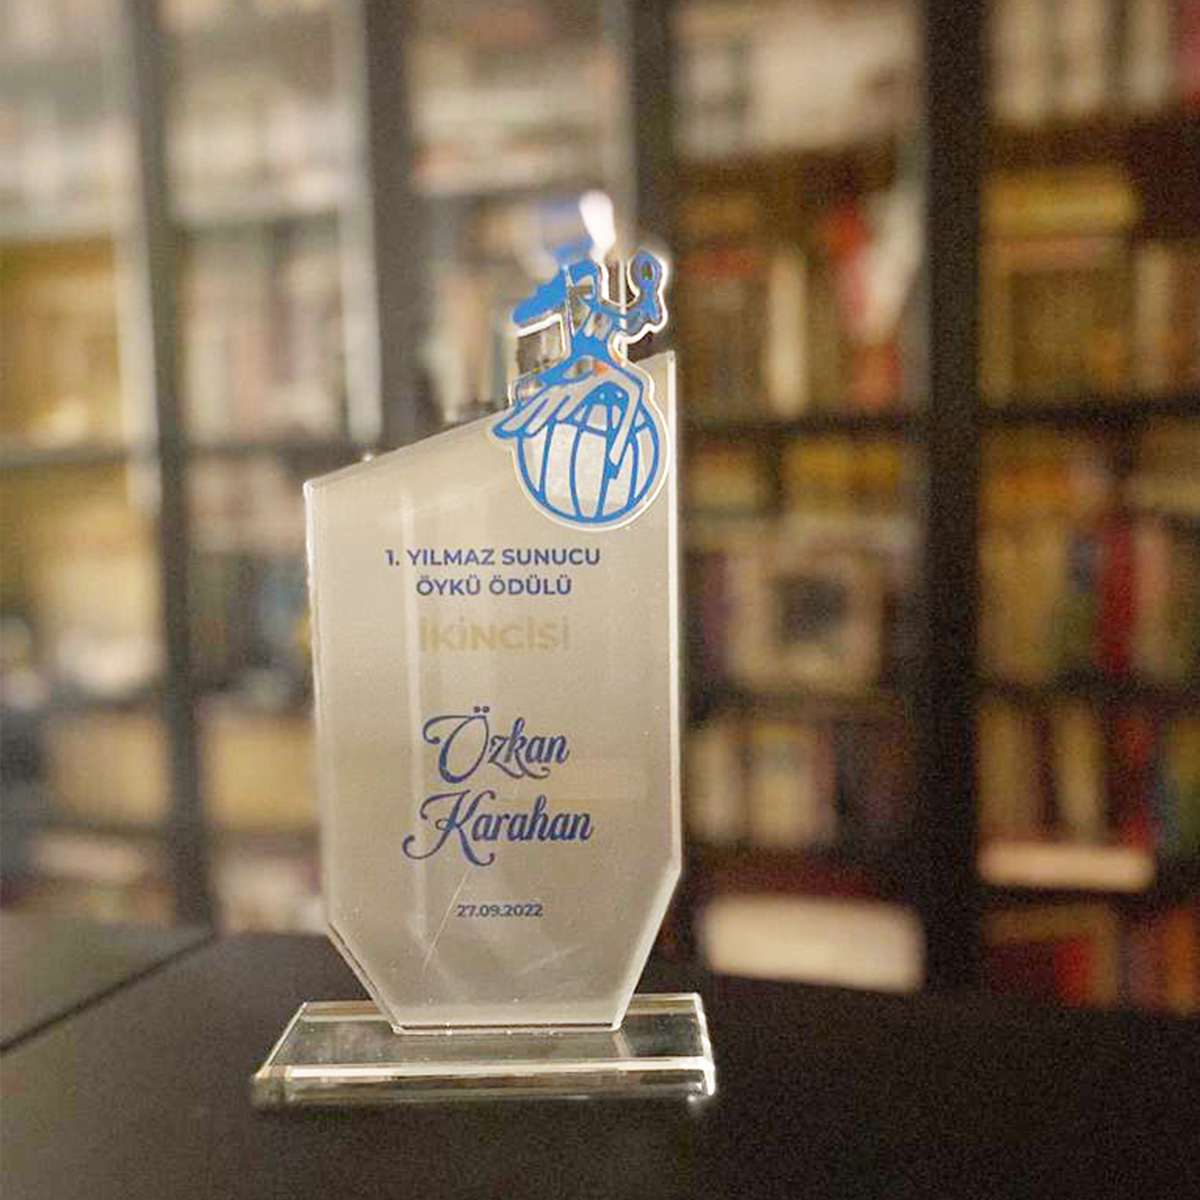 Yazarımız Özkan Karahan, Yılmaz Sunucu Öykü Ödülü’nde ikinci olmuştur. Kendisini tebrik eder, başarılarının devamını dileriz.